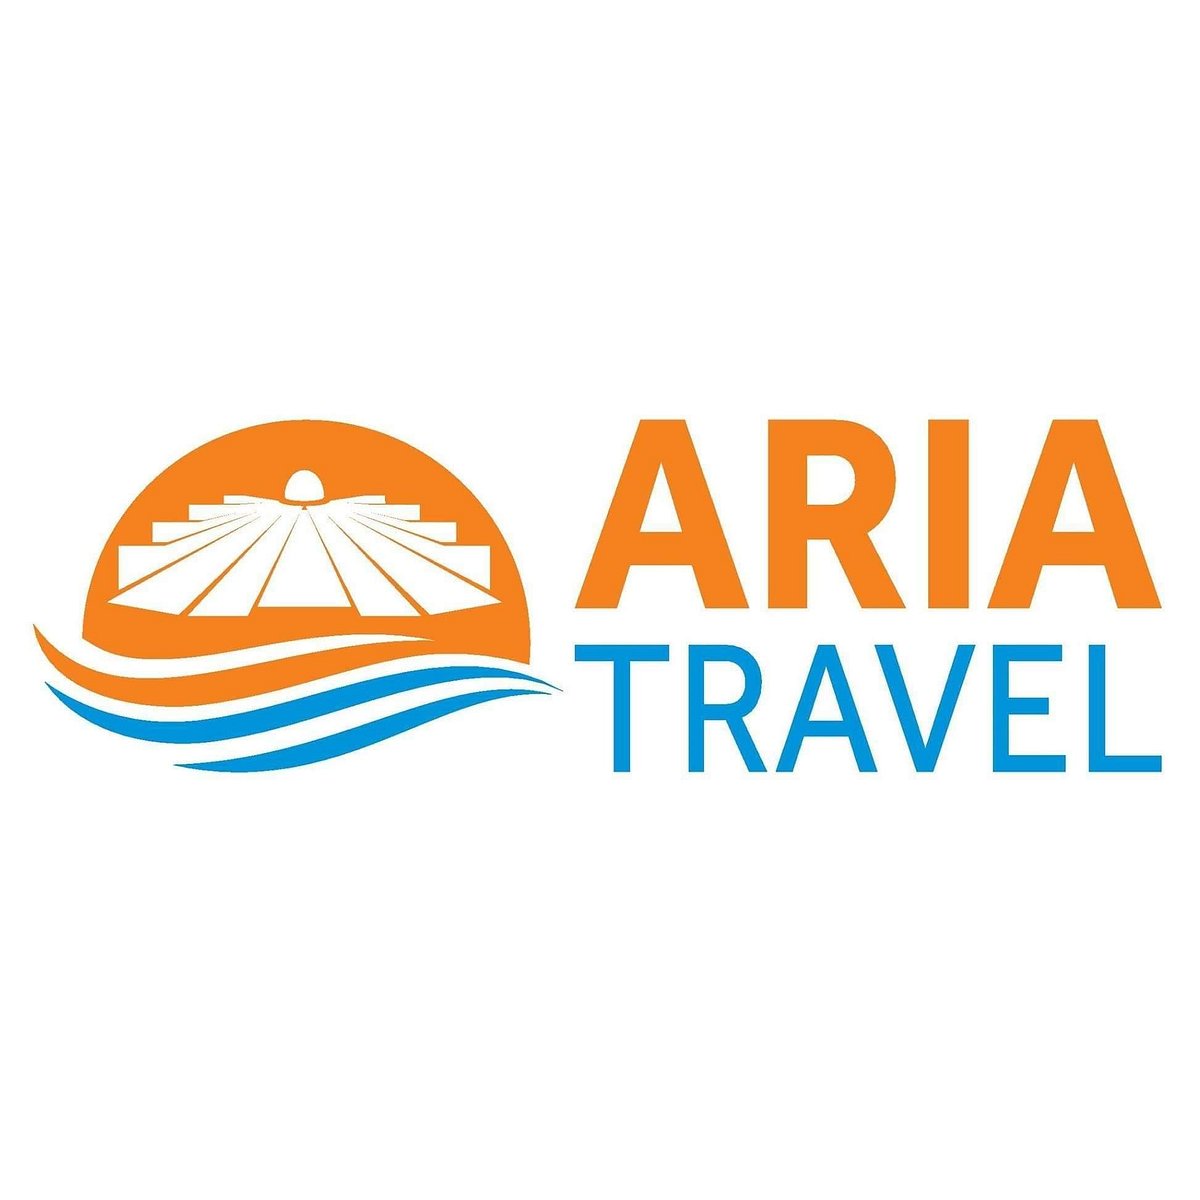 albania travel agency